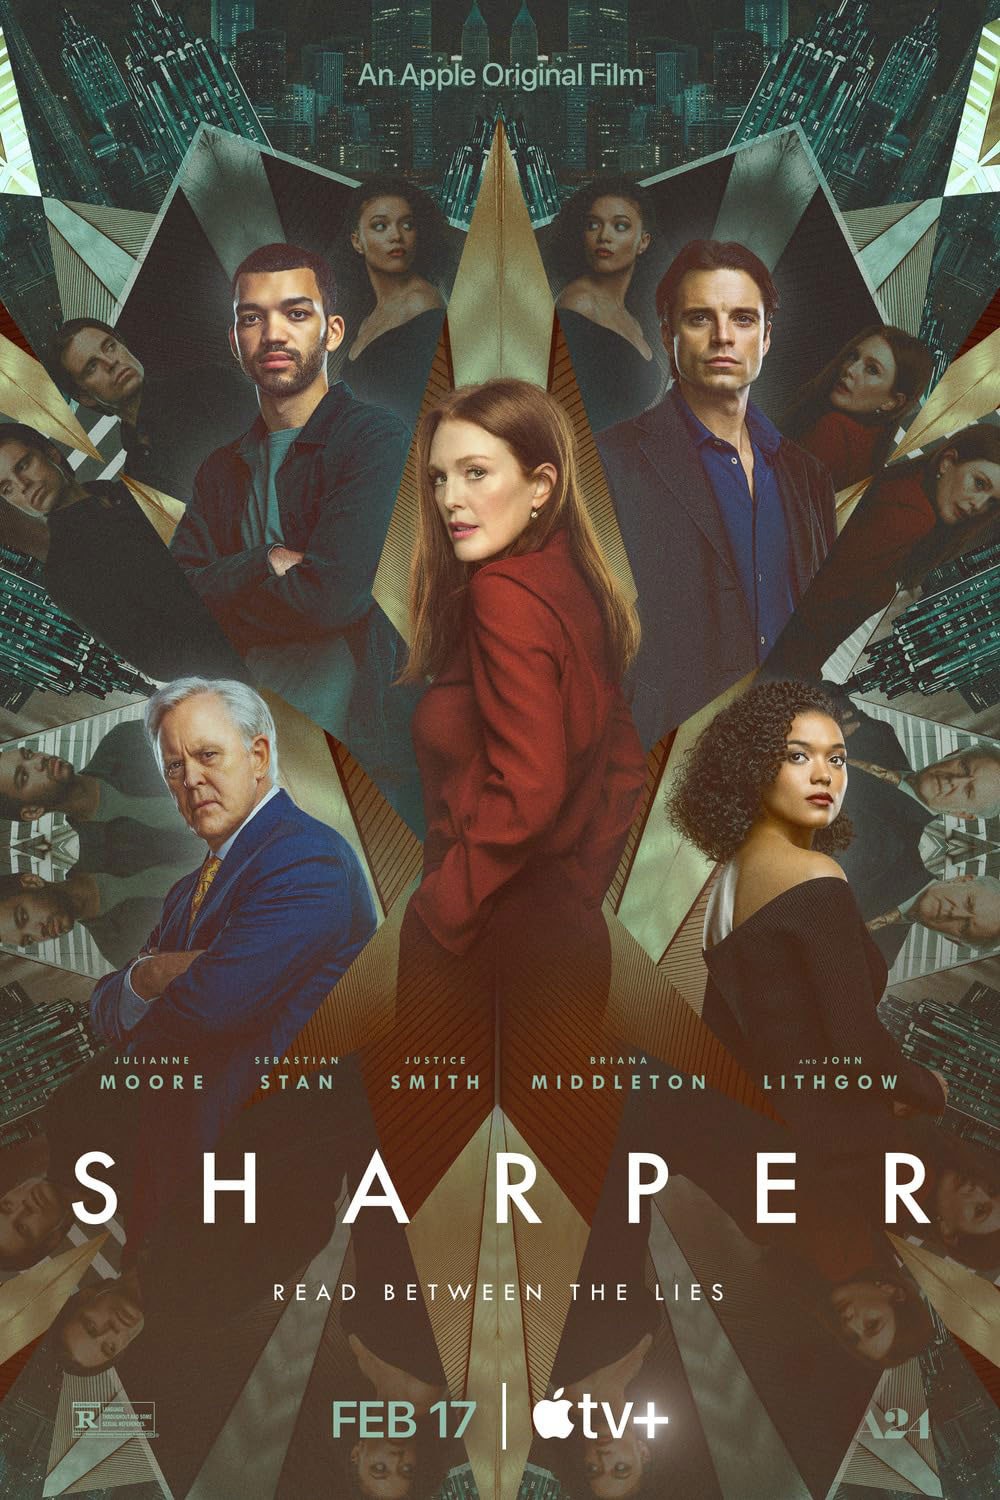 Sharper film poster